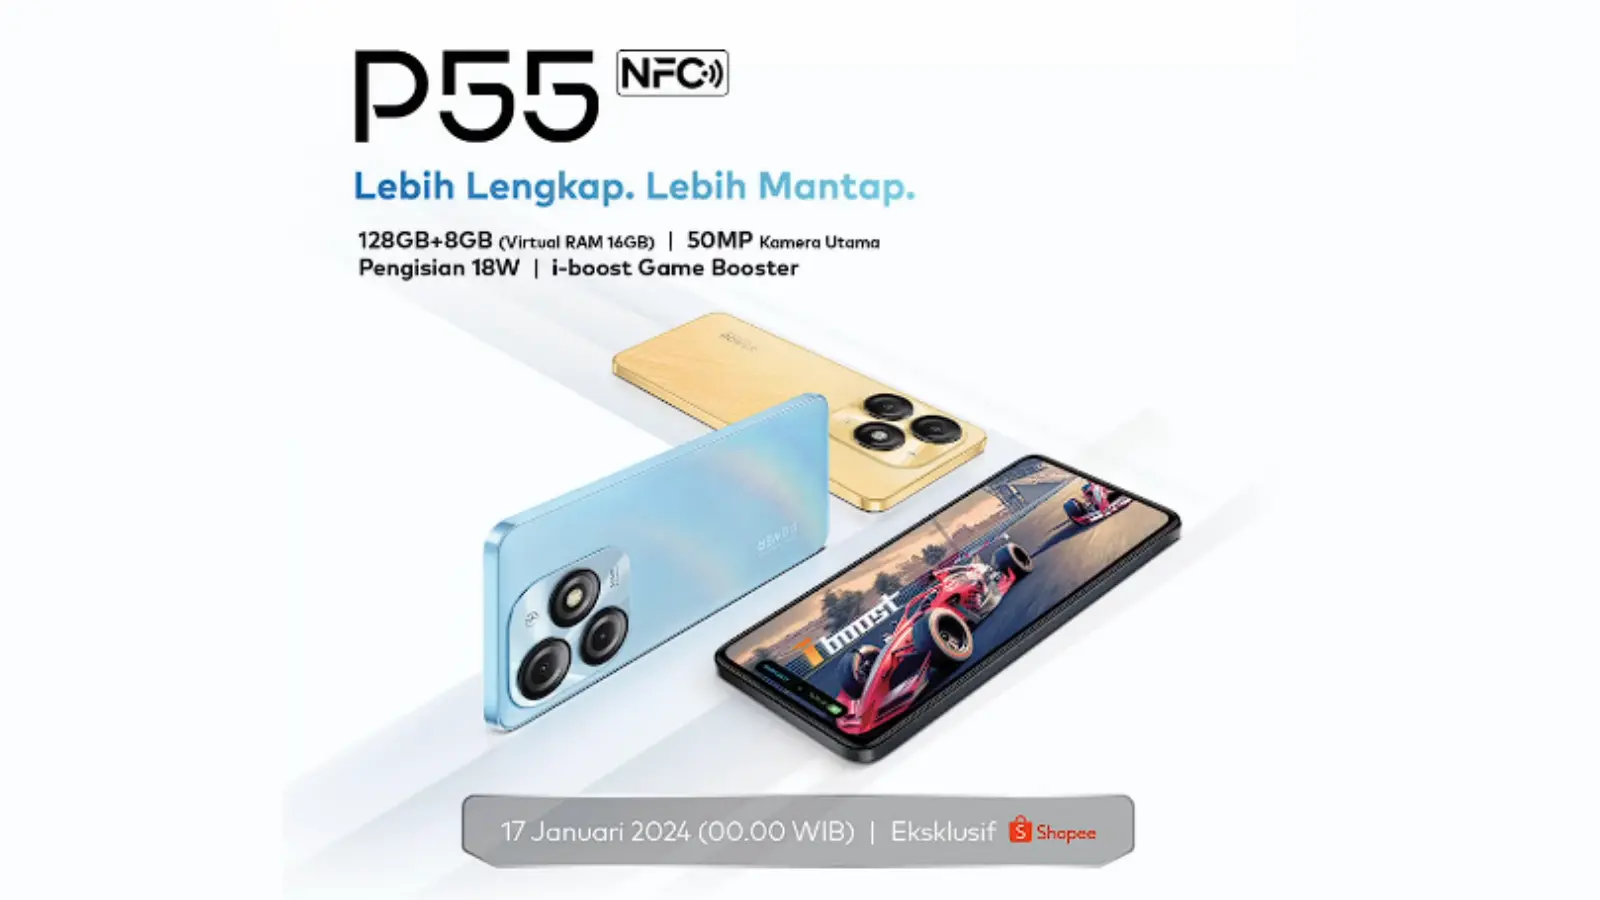 Itel P55 NFC Segera Rilis di Indonesia, Cek Spesifikasinya!